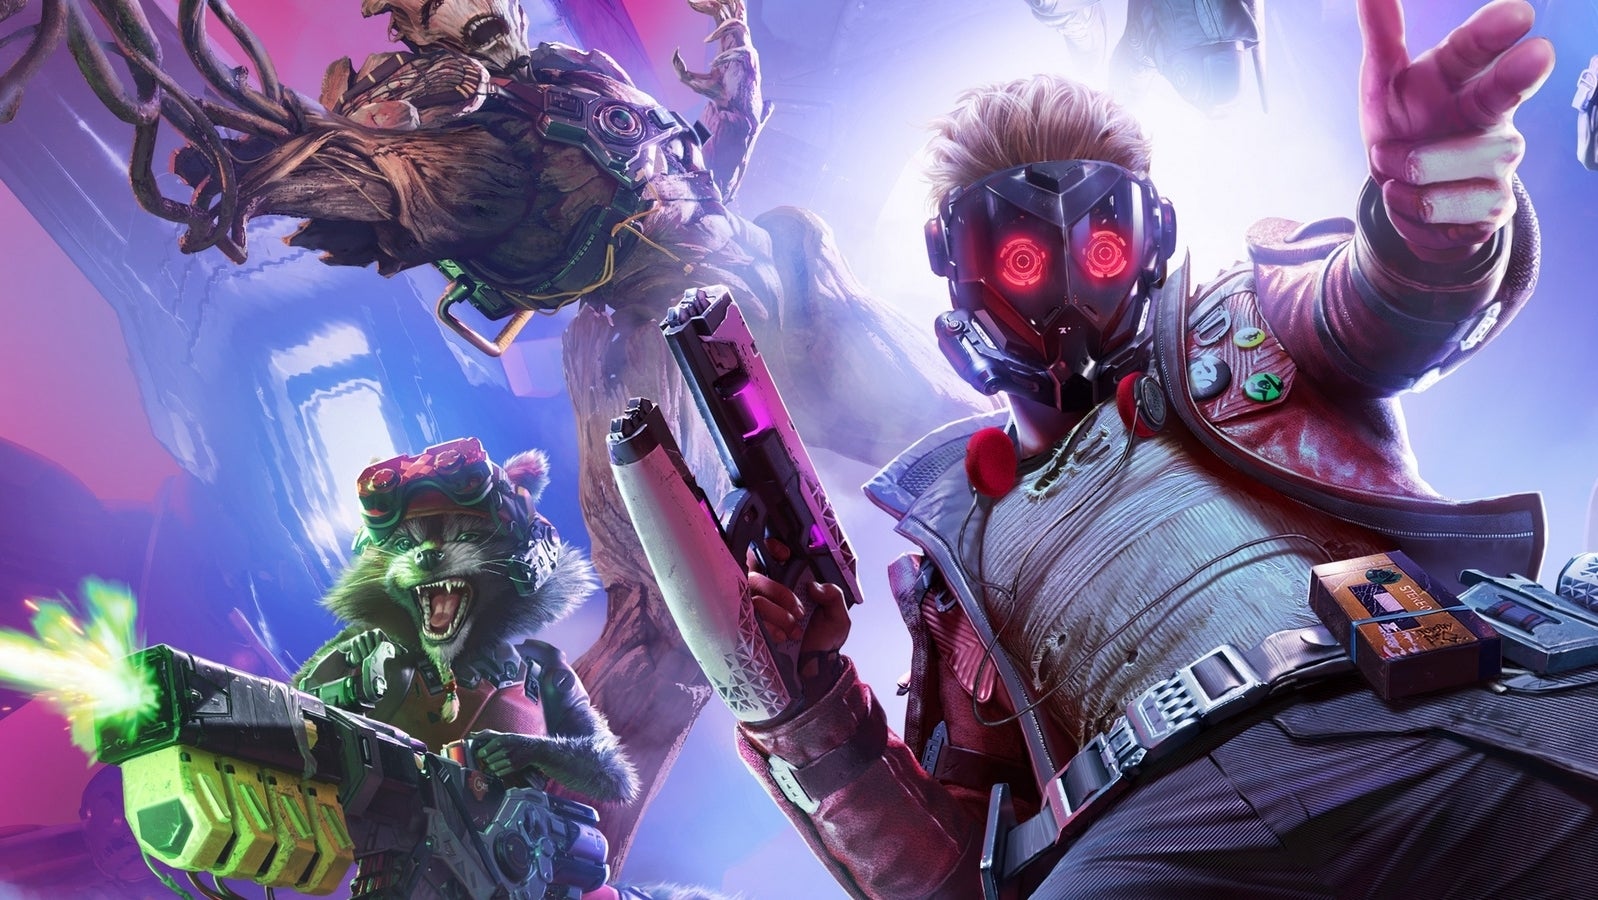 Immagine di Marvel's Guardians of the Galaxy tra combattimenti adrenalinici e tanto humor nel trailer di lancio